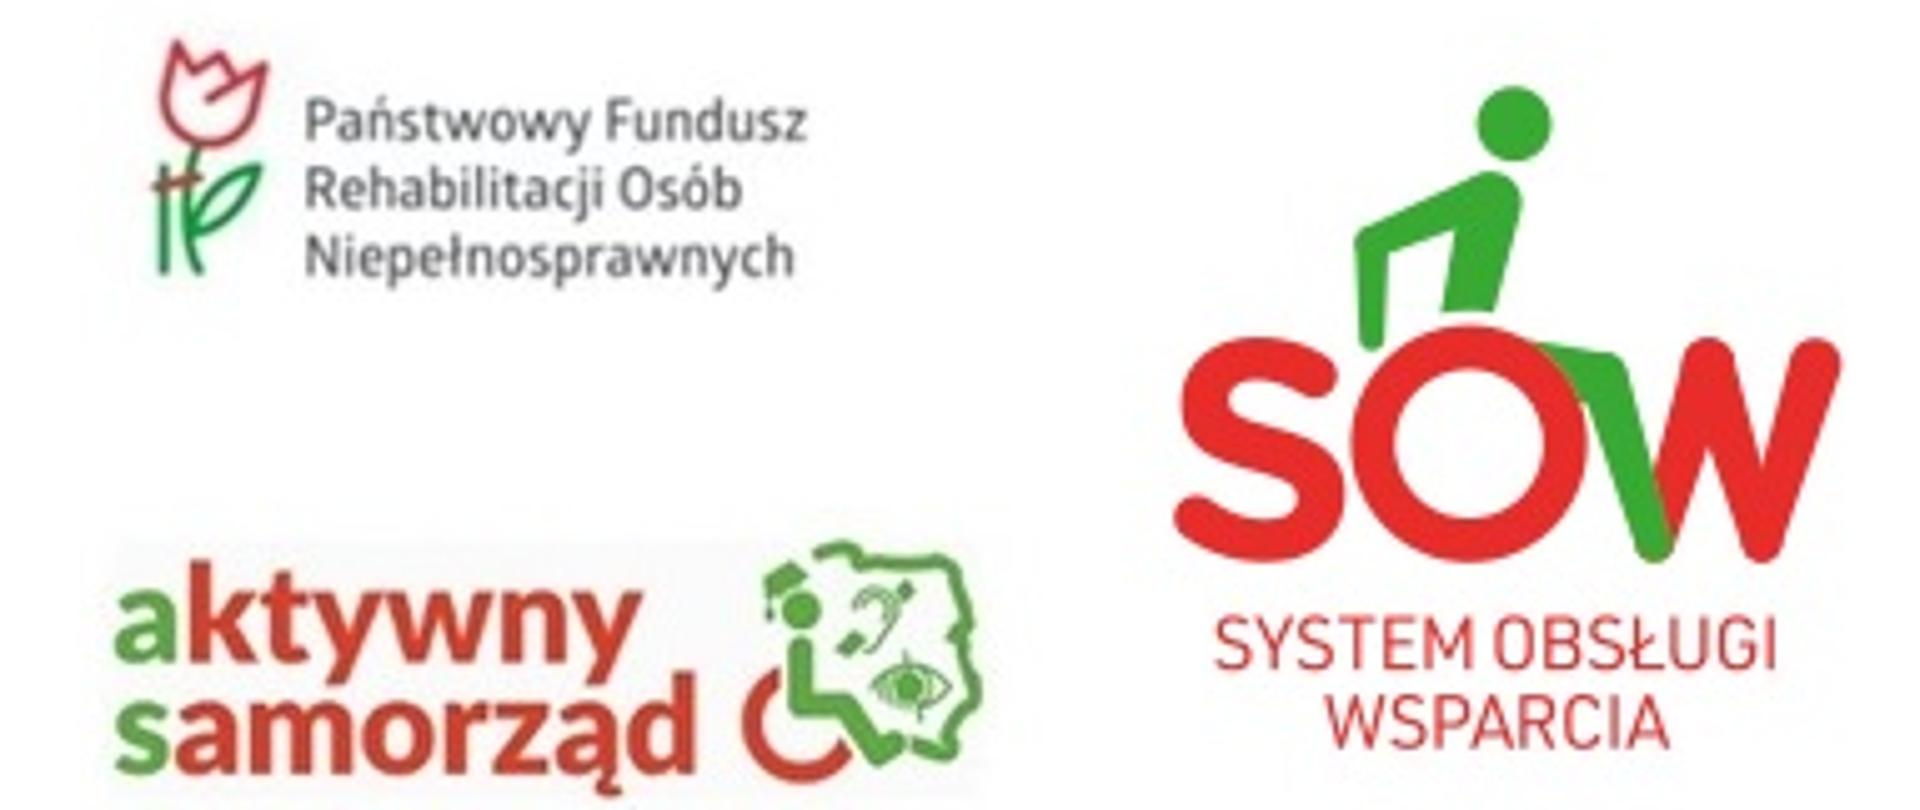 na białym tle logo Państwowego Funduszu Rehabilitacji Osób Niepełnosprawnych, Systemu Obsługi Wsparcia, aktywnego samorządu 